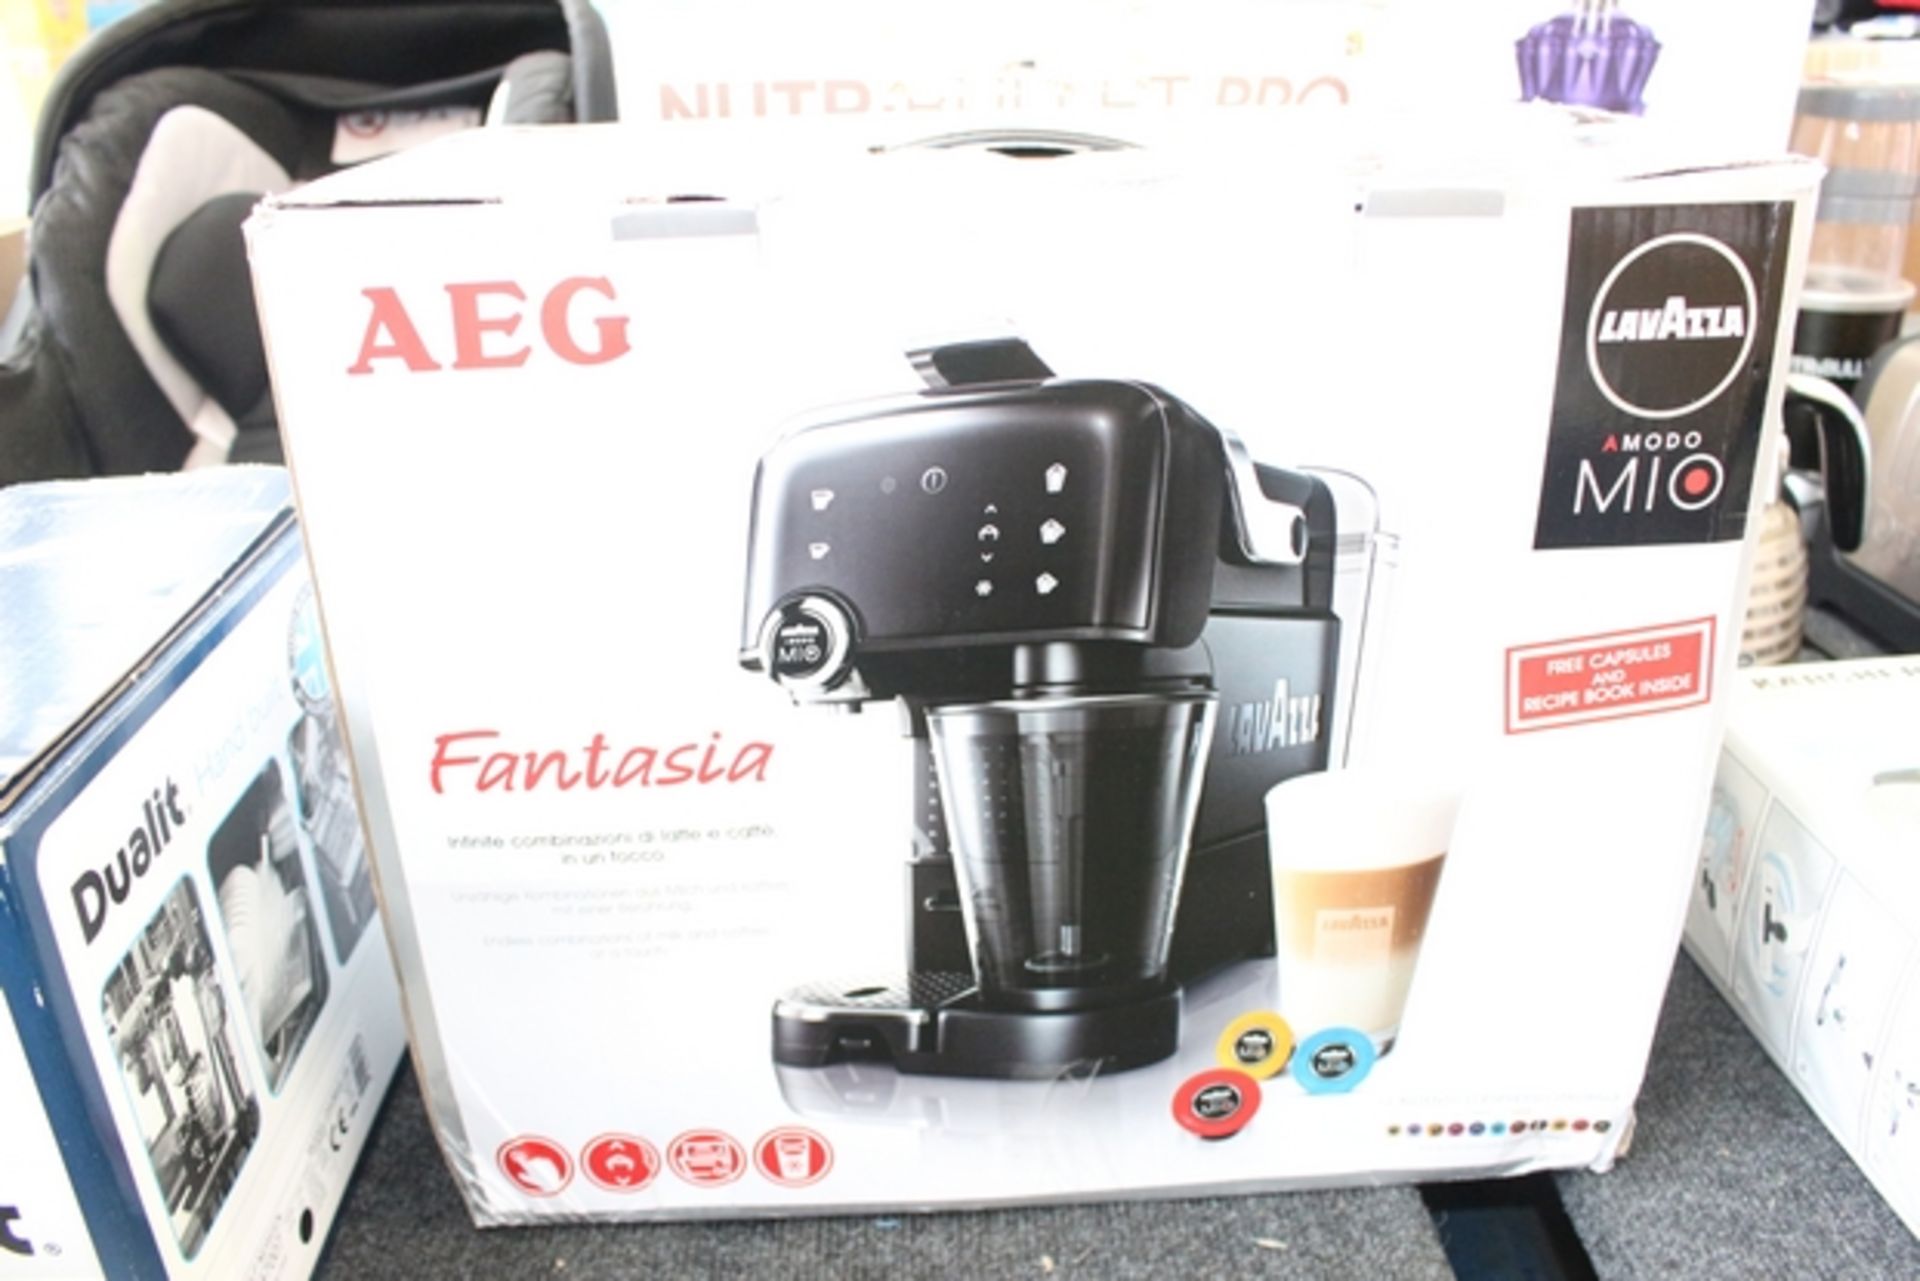 1X BOXED AEG LAVAZZA AMODO MIO FANTASIA ESPRESSO COFFEE MACHINE RRP £100 (ADC-09241141) (17/05/17)